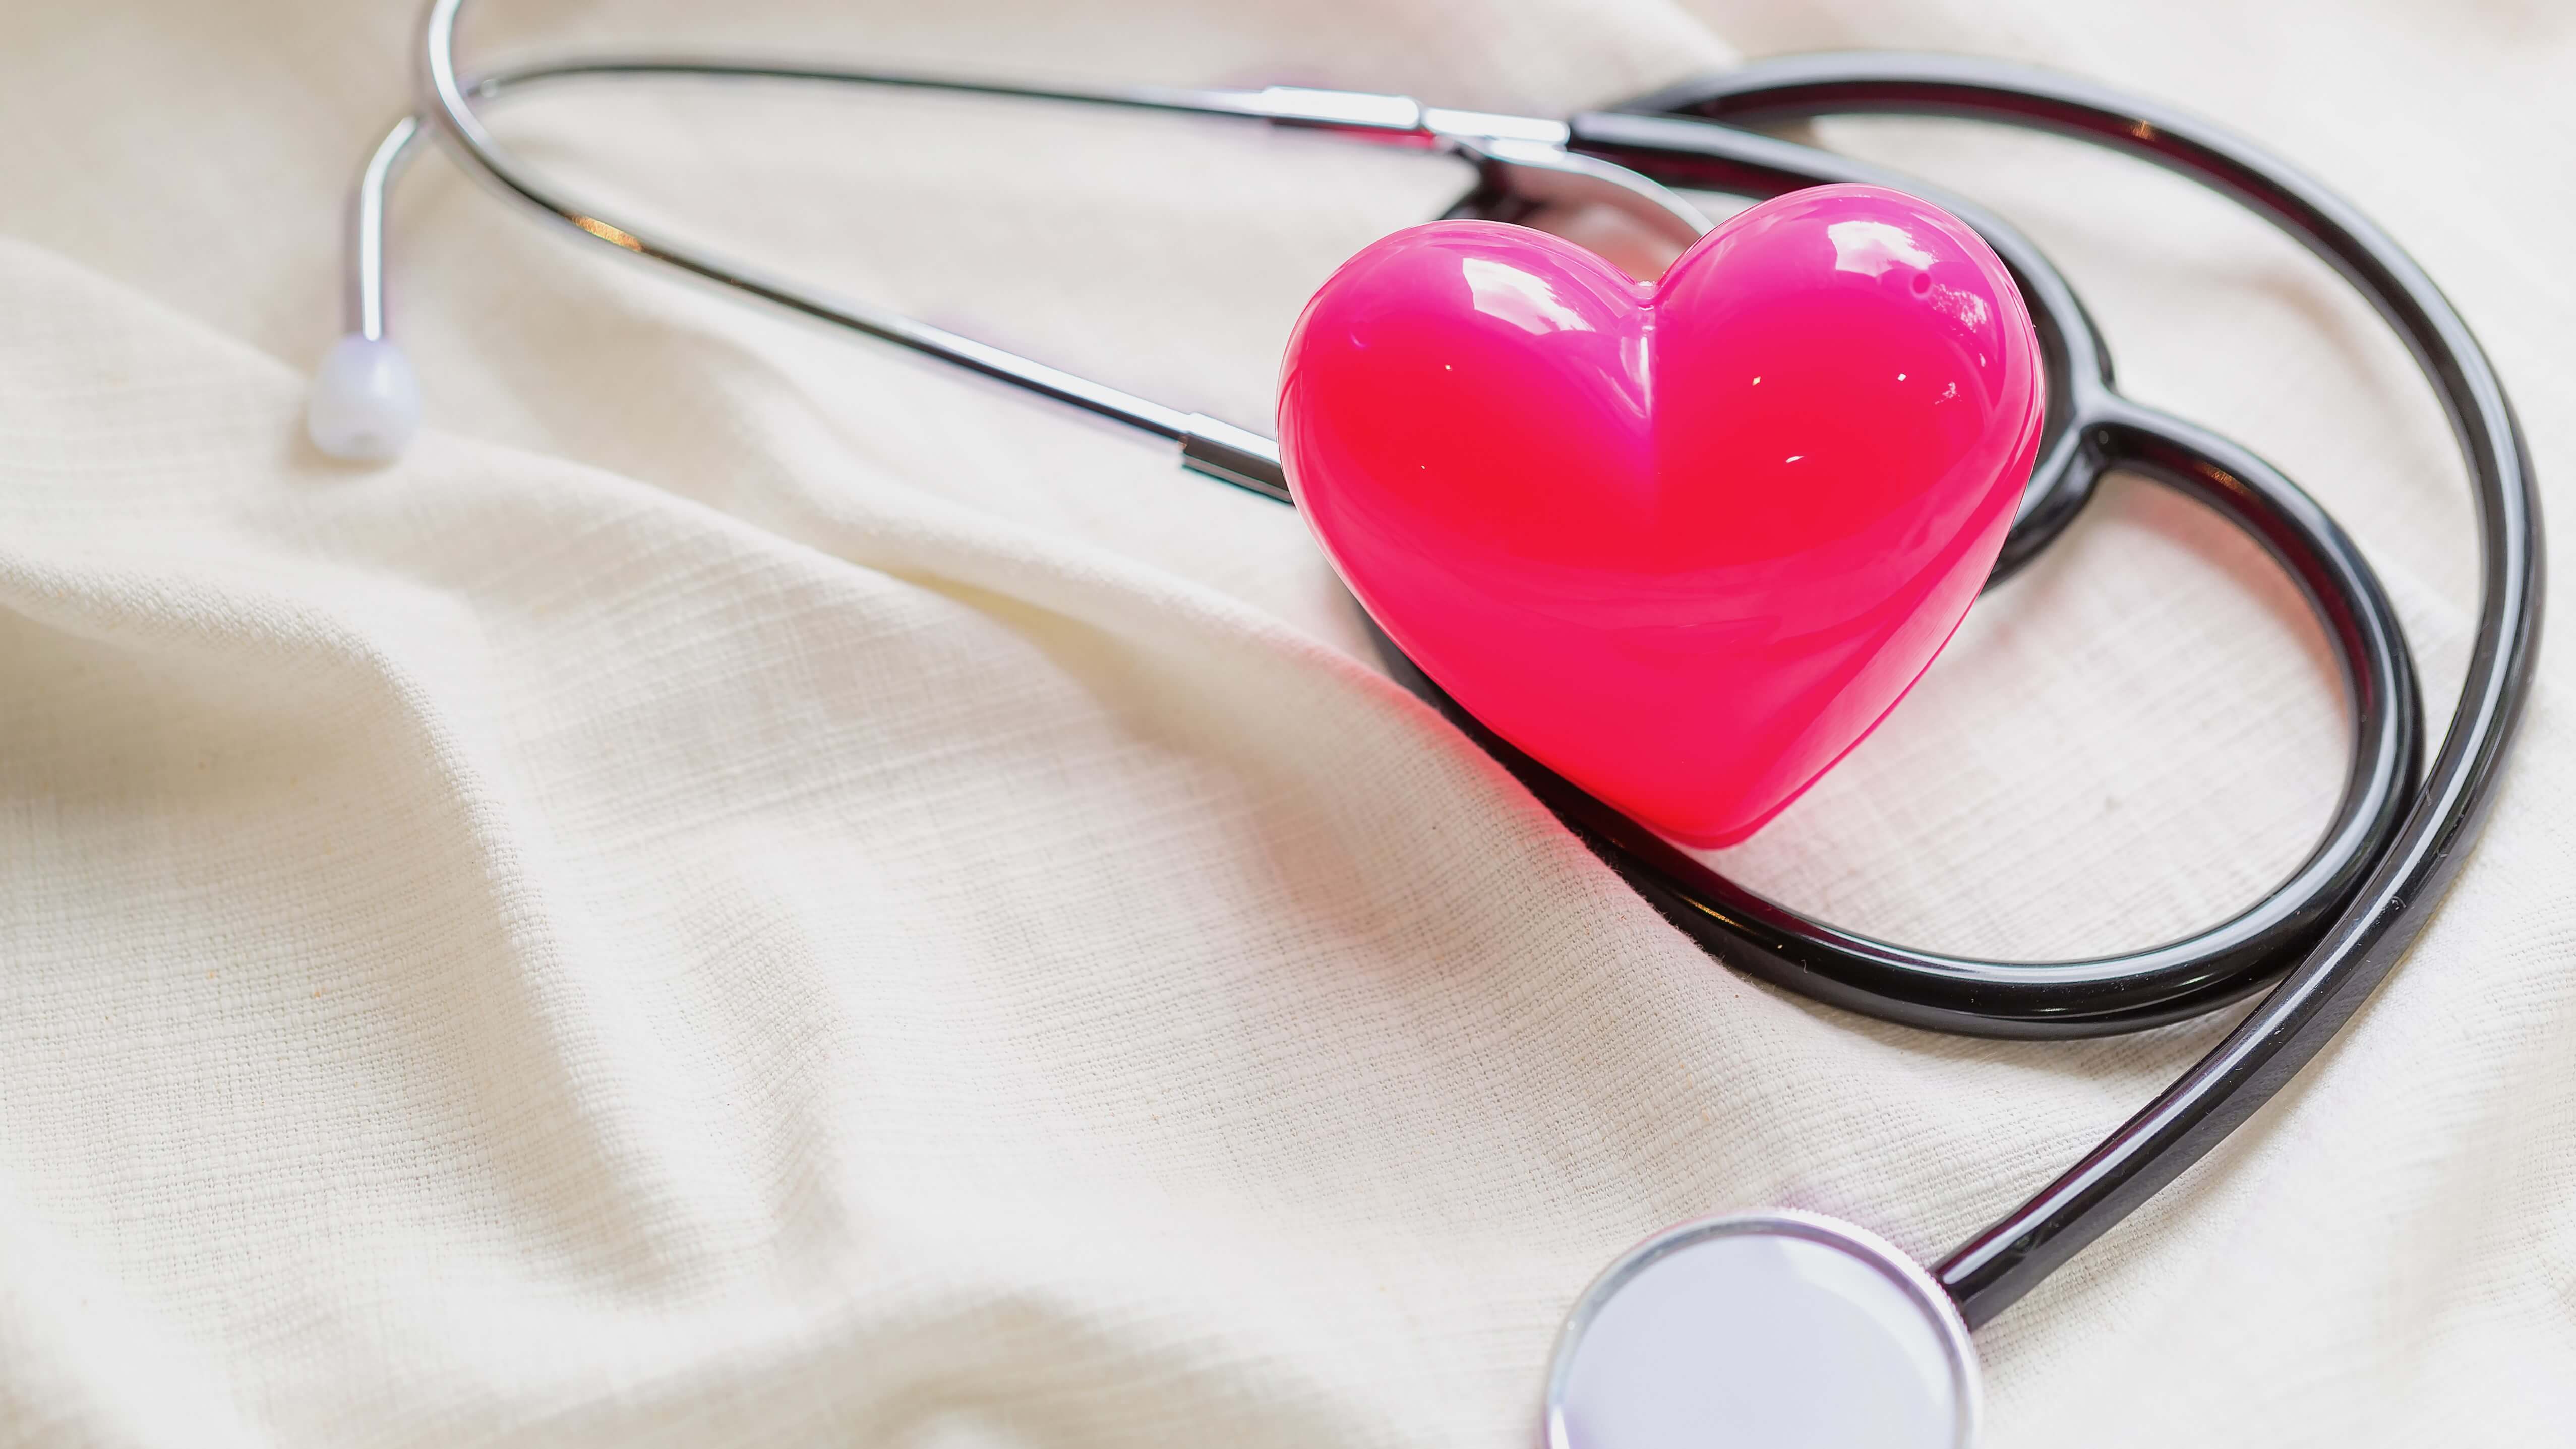 Jantung & Pembuluh Darah - Gleneagles Hospital Penang